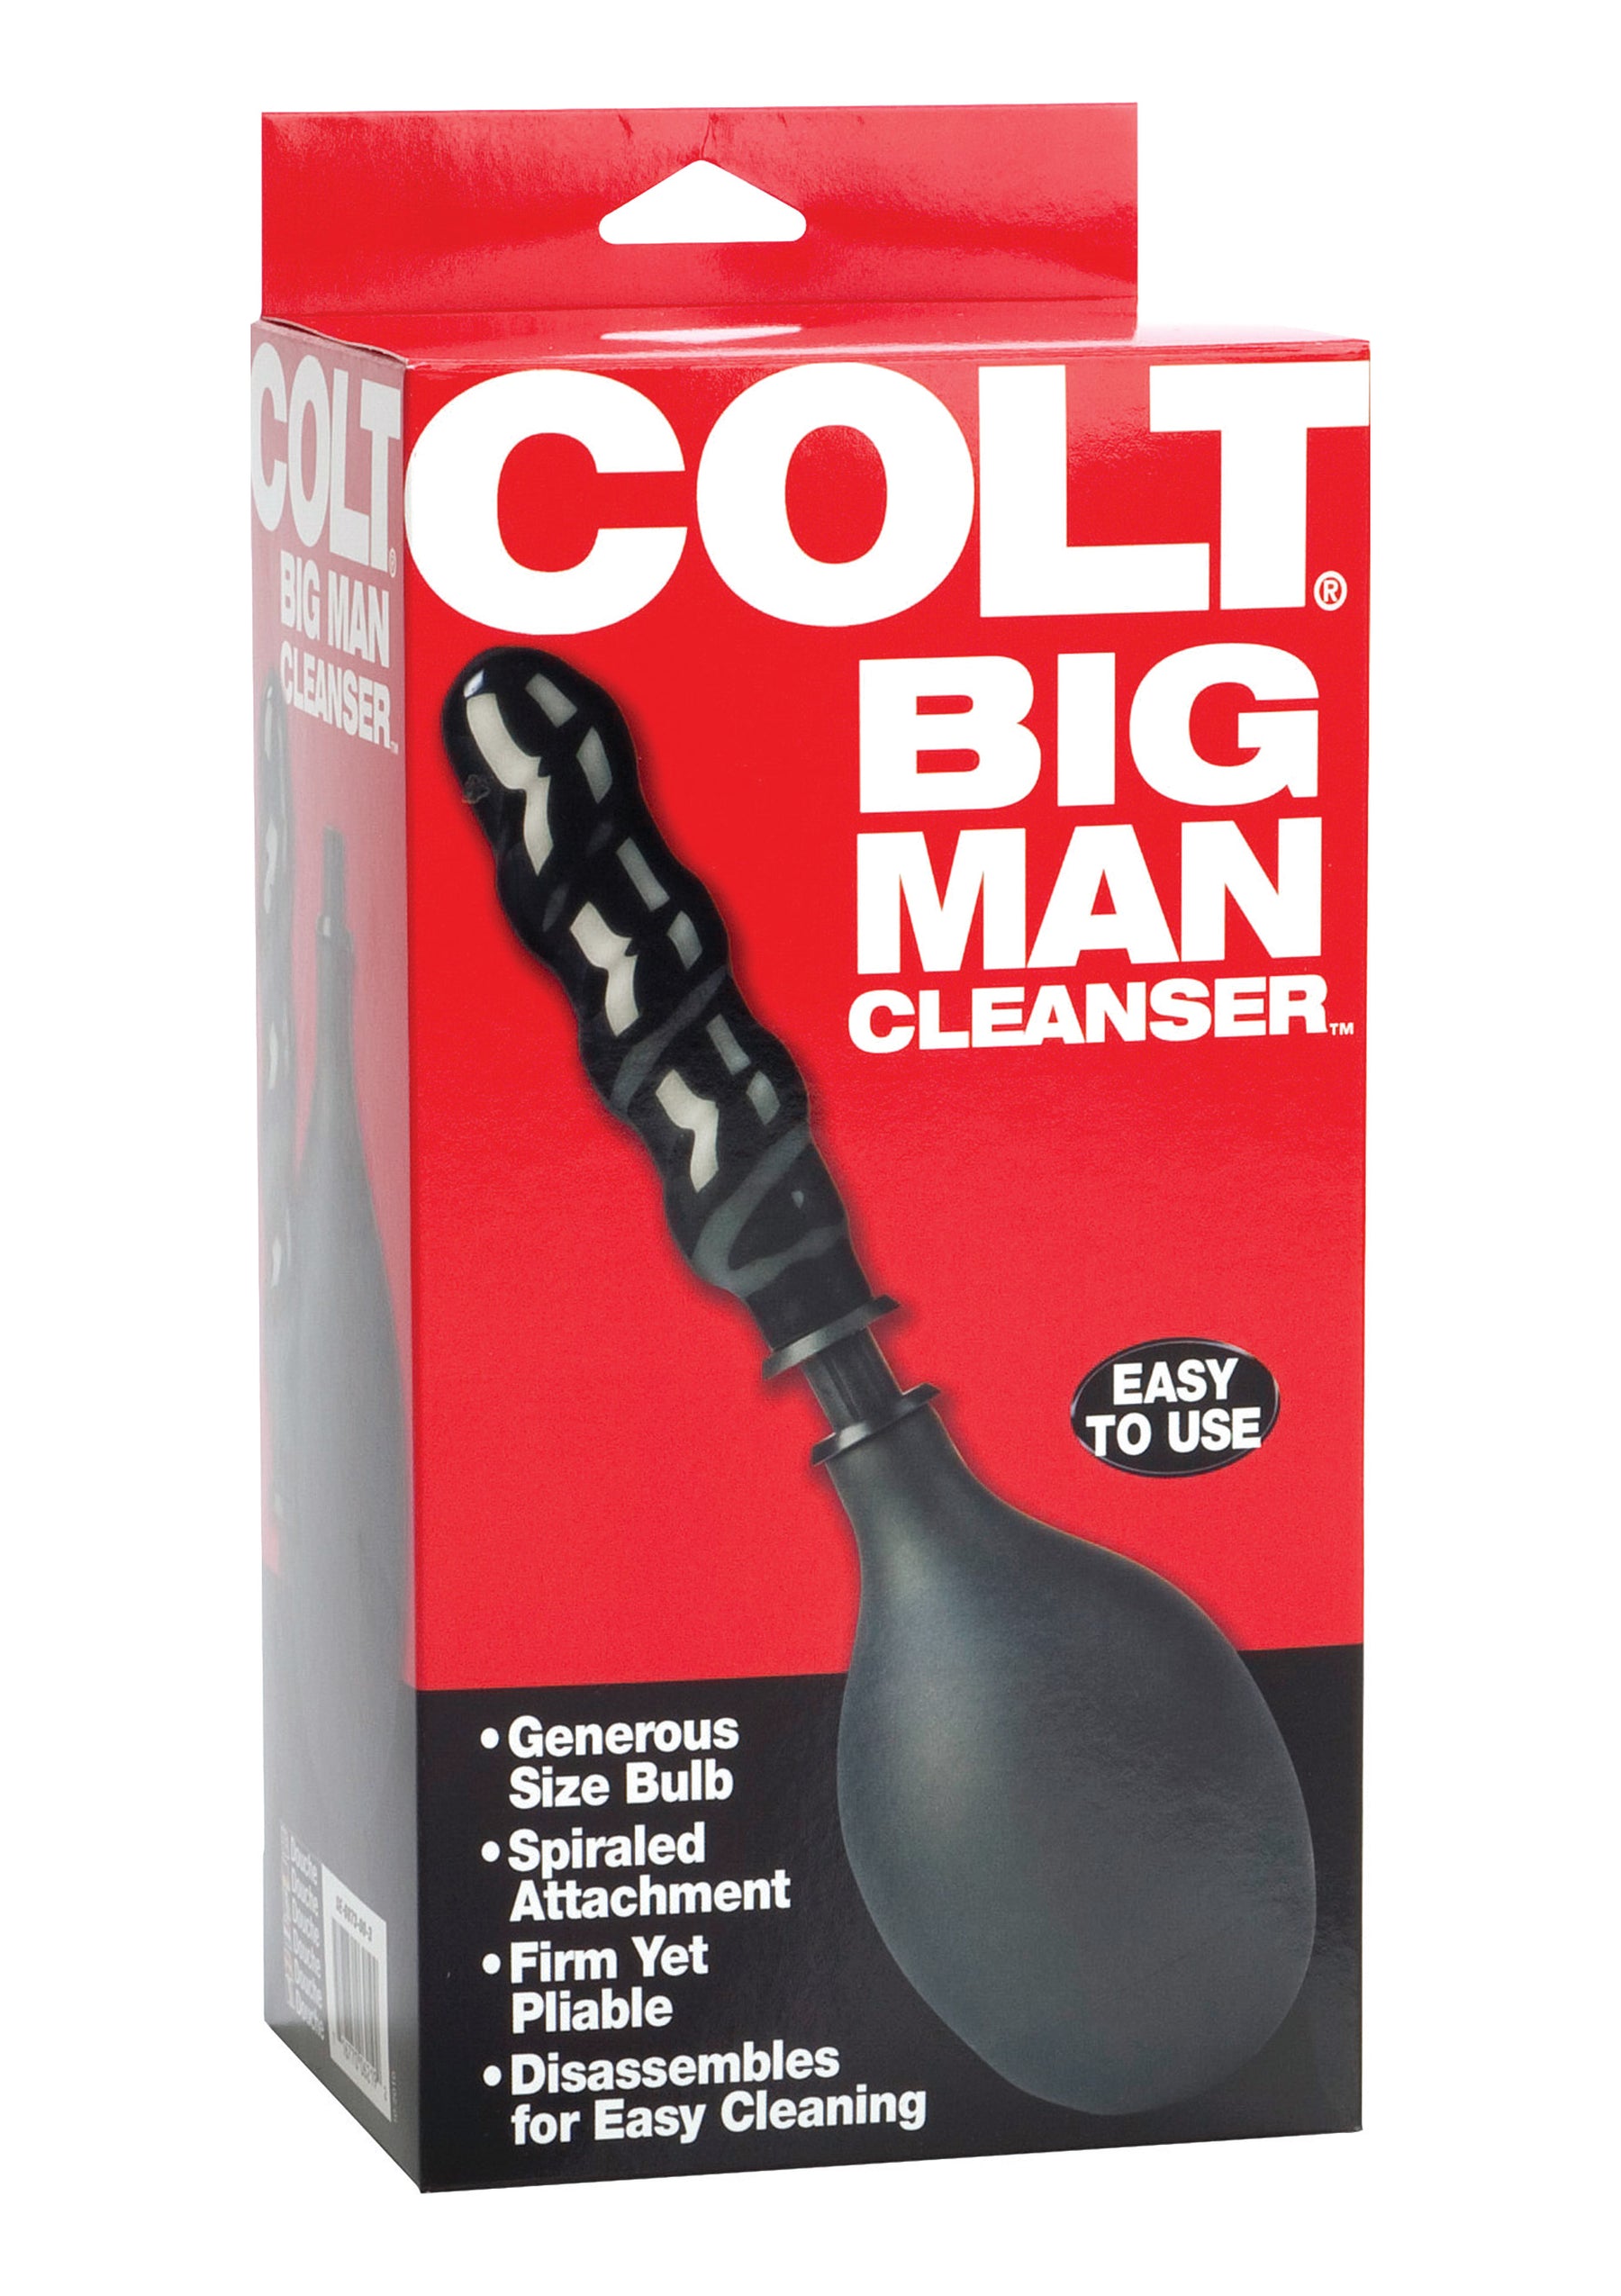 COLT Big Man Cleanser